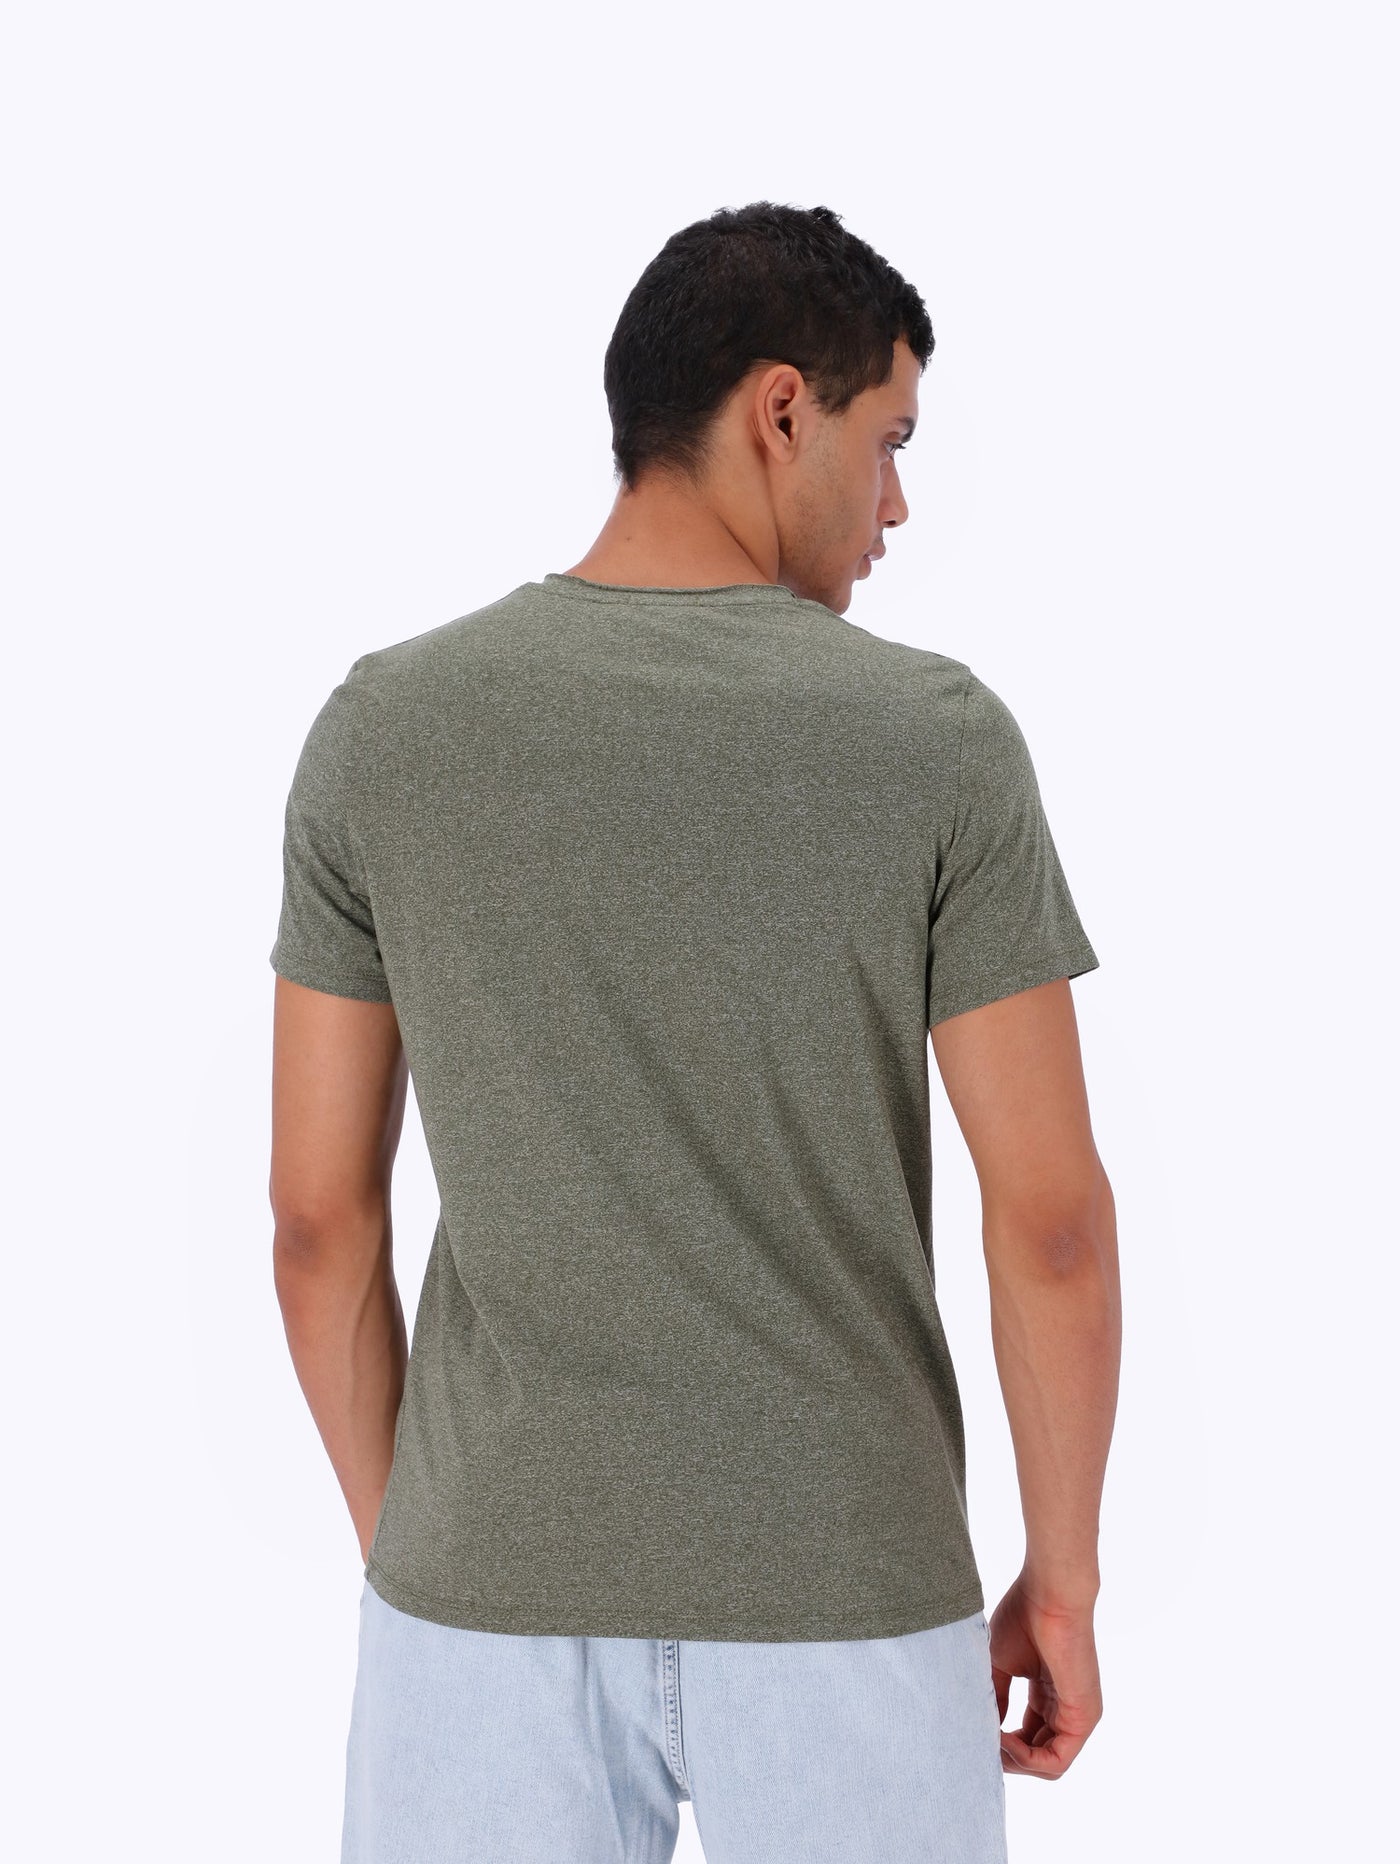 OR Men's V-Neck Front Pocket T-Shirt